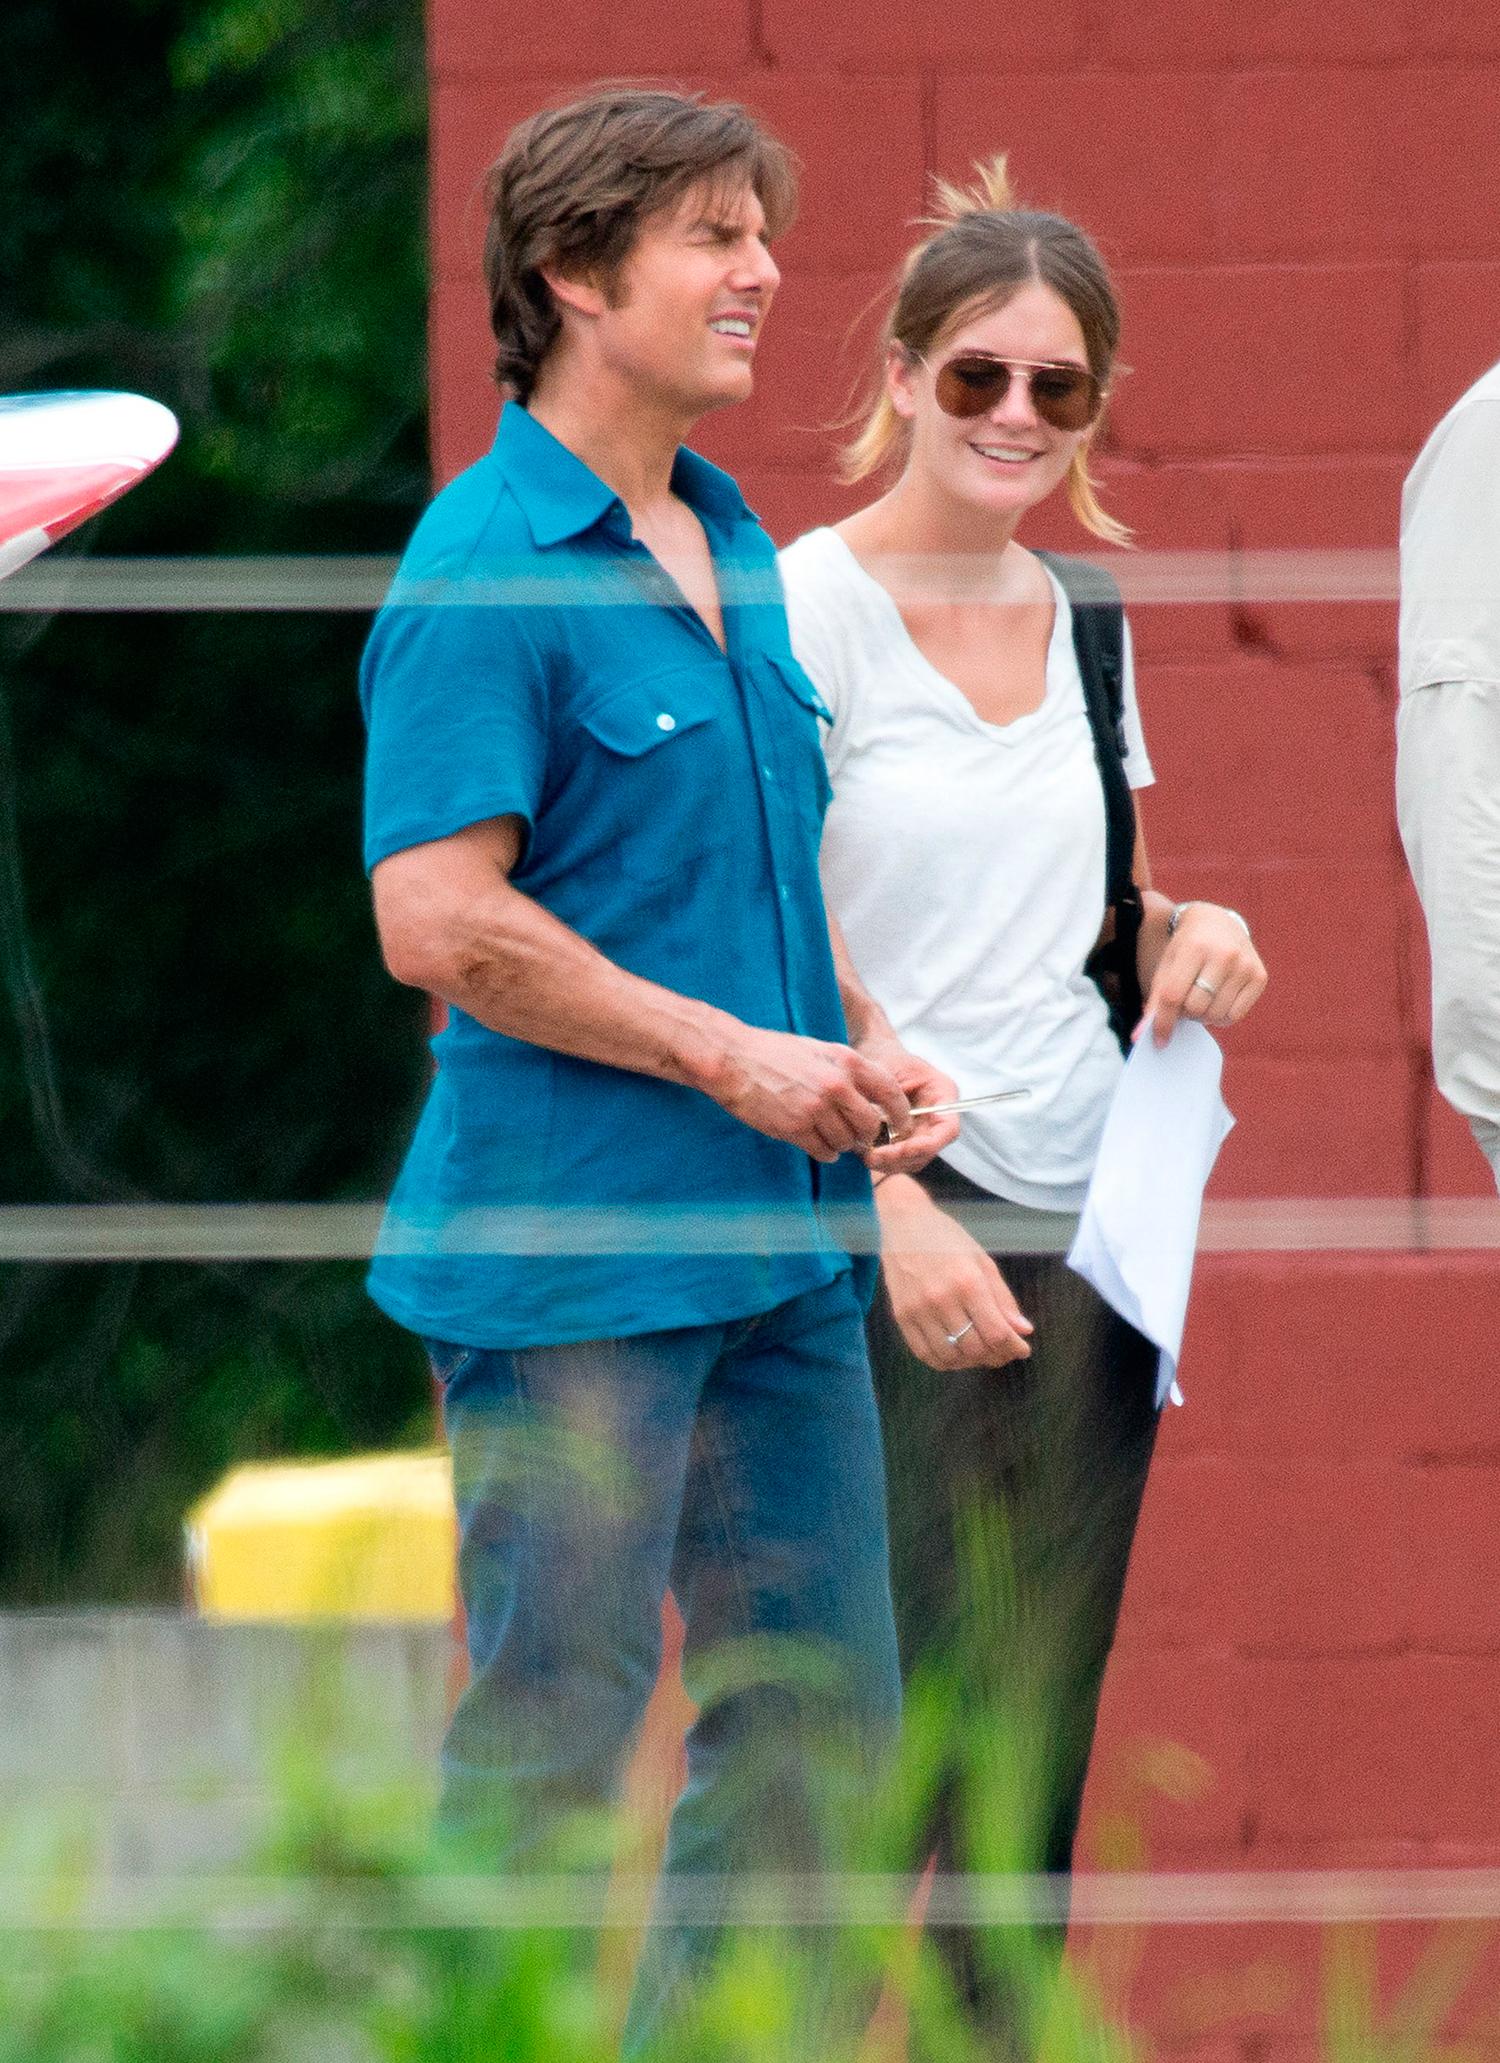 Paret har setts på inspelningen av ”Mena”, men träffades när Tom Cruise spelade in senaste ”Mission: impossible”-filmen förra året.